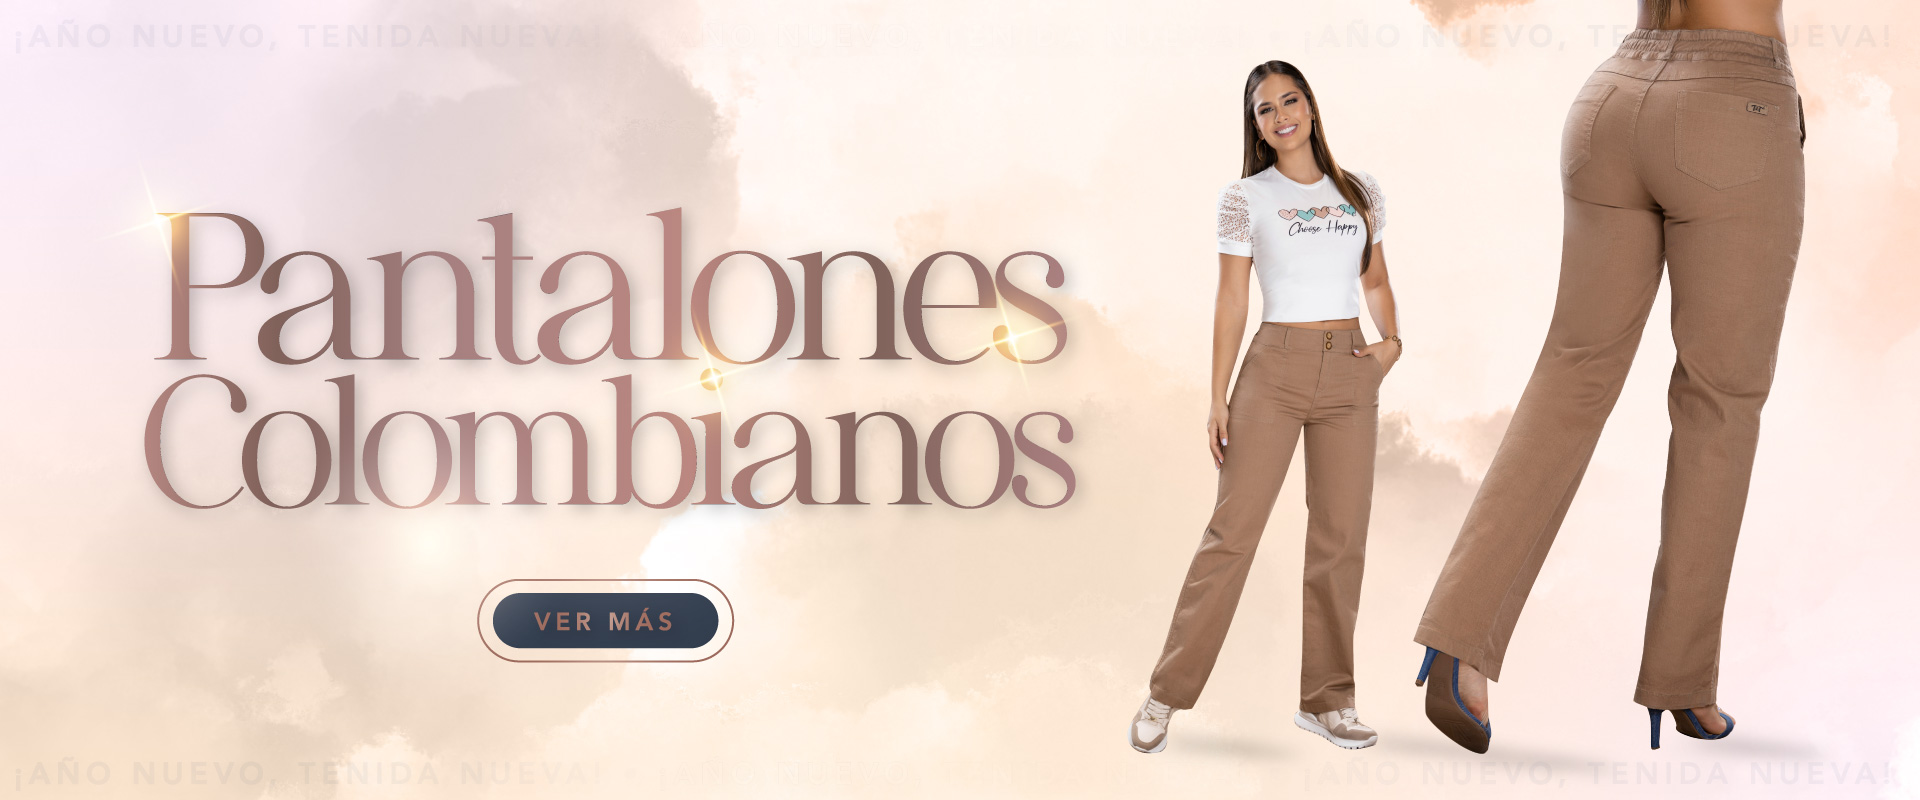 Banner-categoría-pantalones-colombianos-1920-x-800